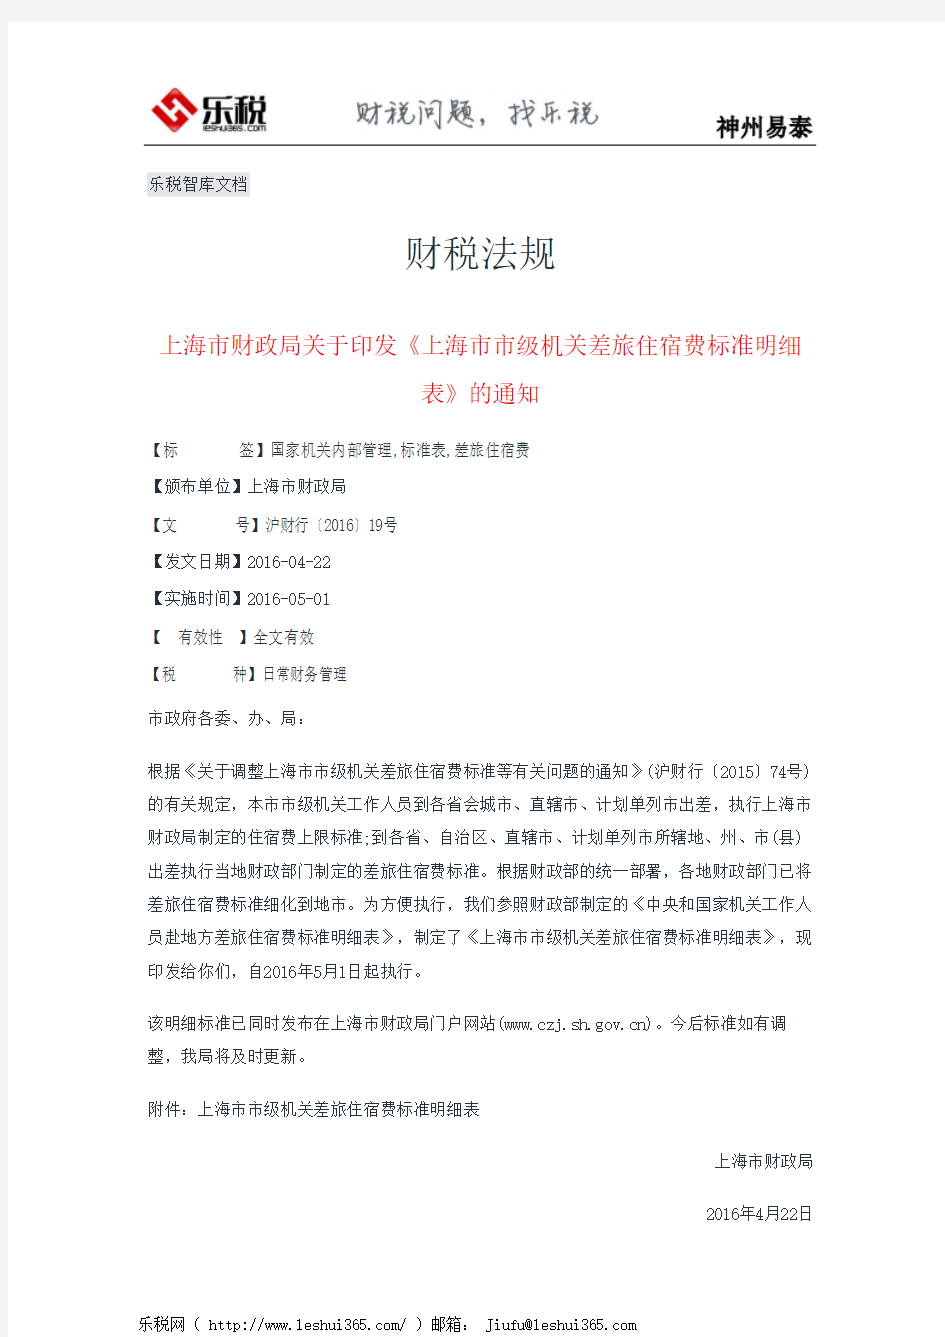 上海市财政局关于印发《上海市市级机关差旅住宿费标准明细表》的通知